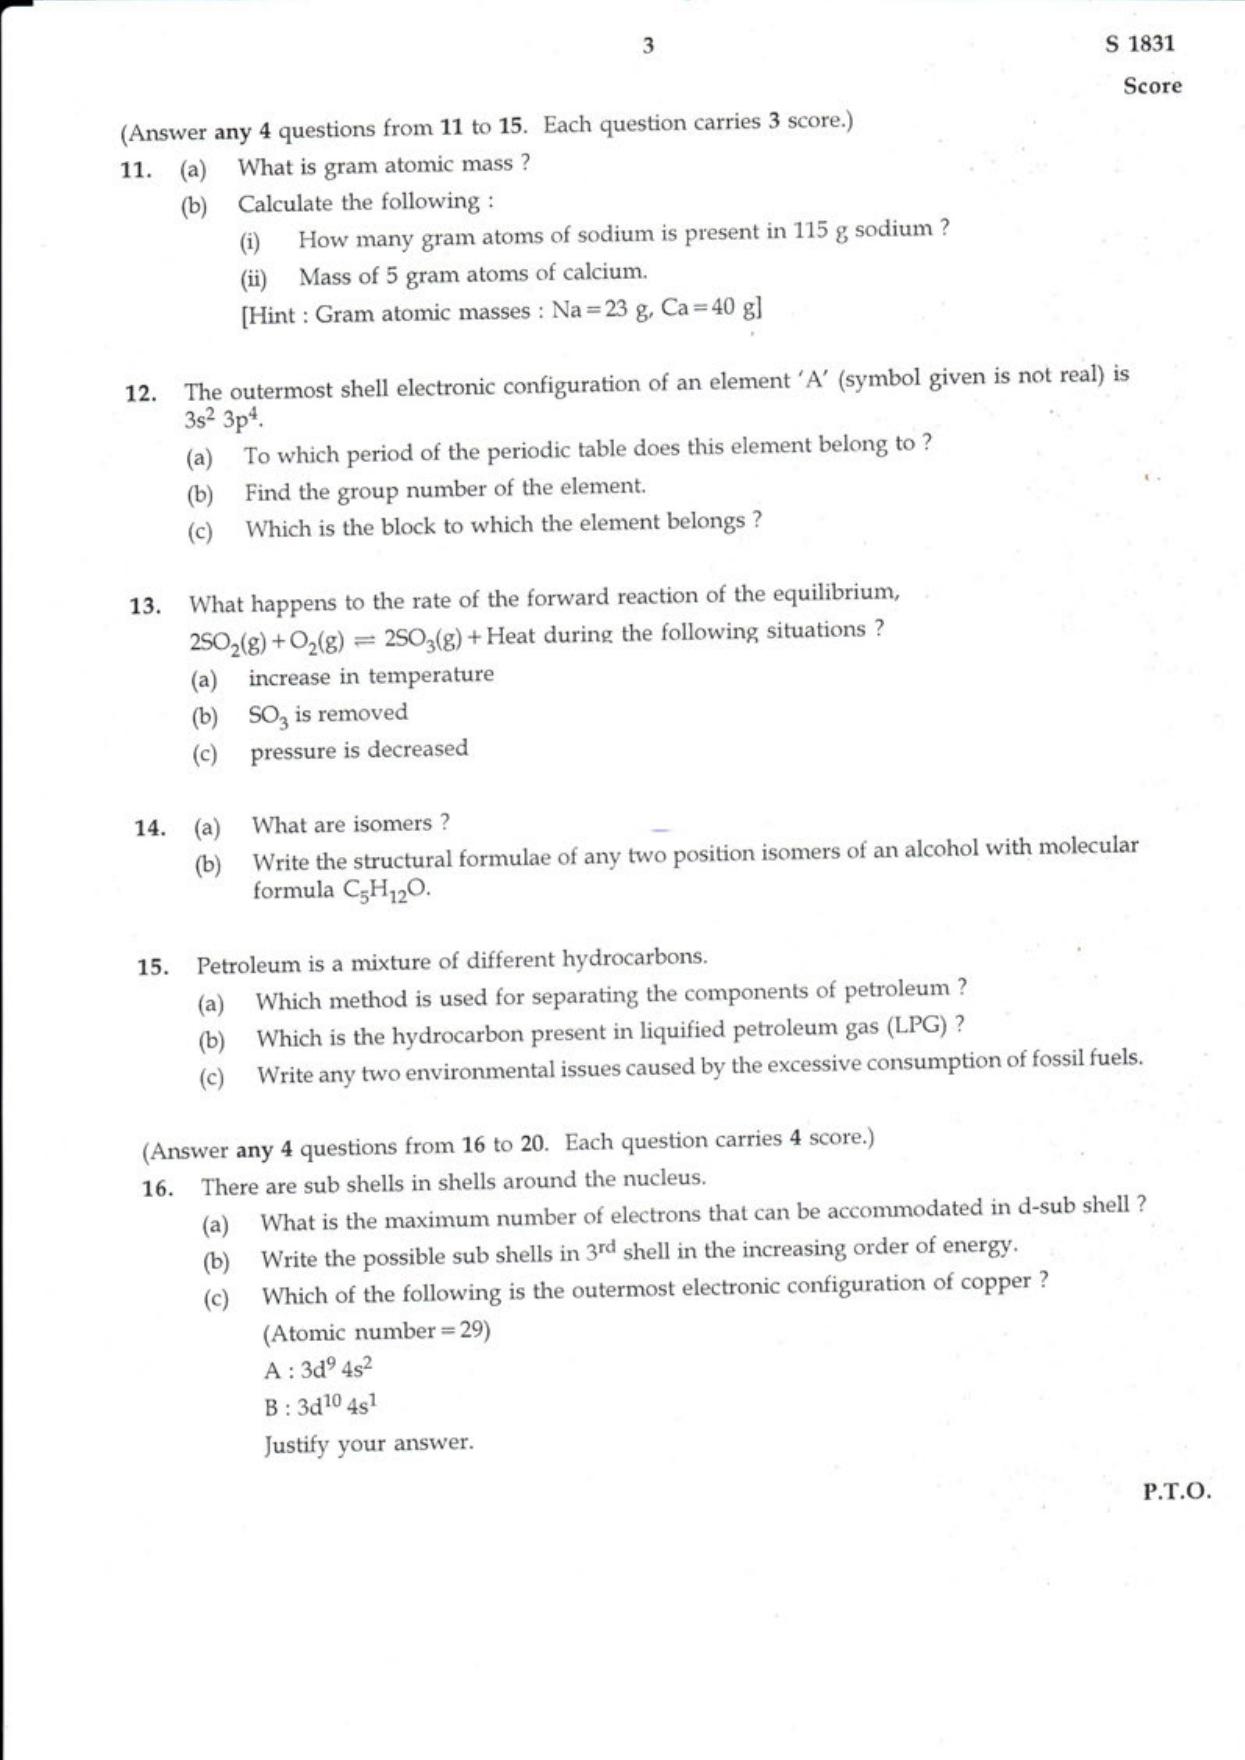 Kerala SSLC 2018 Chemistry (EM) Question Paper - Page 3